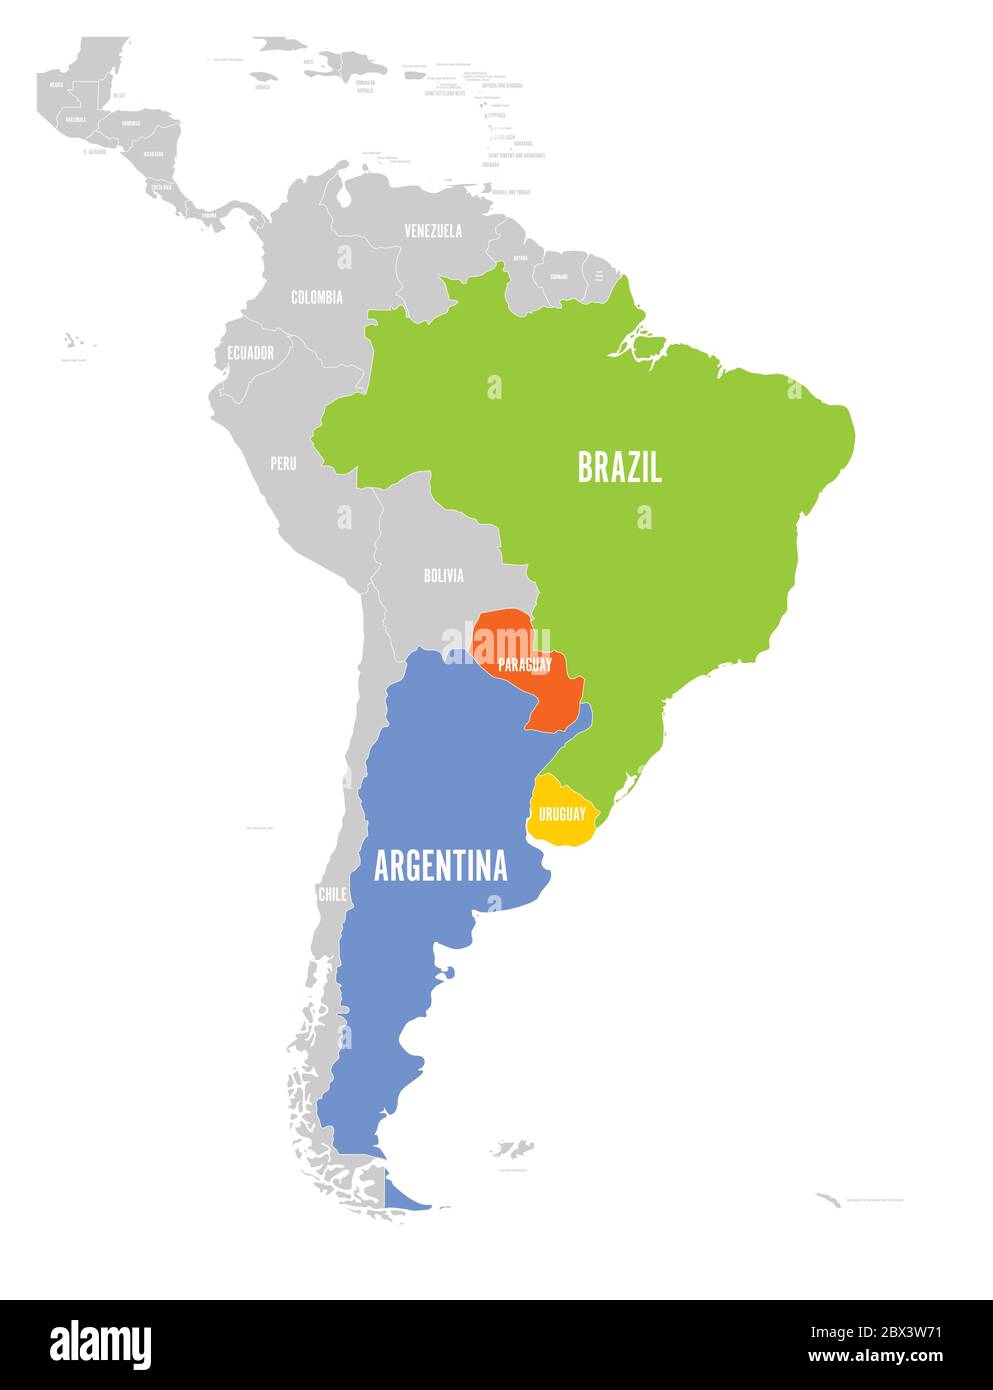 Karte von MERCOSUR-Ländern. südamerikanische Handelsvereinigung. Hervorgehoben wurden die Mitgliedstaaten Brasilien, Paraguay, Uruguay und Argetina. Seit Dezember 2016. Stock Vektor